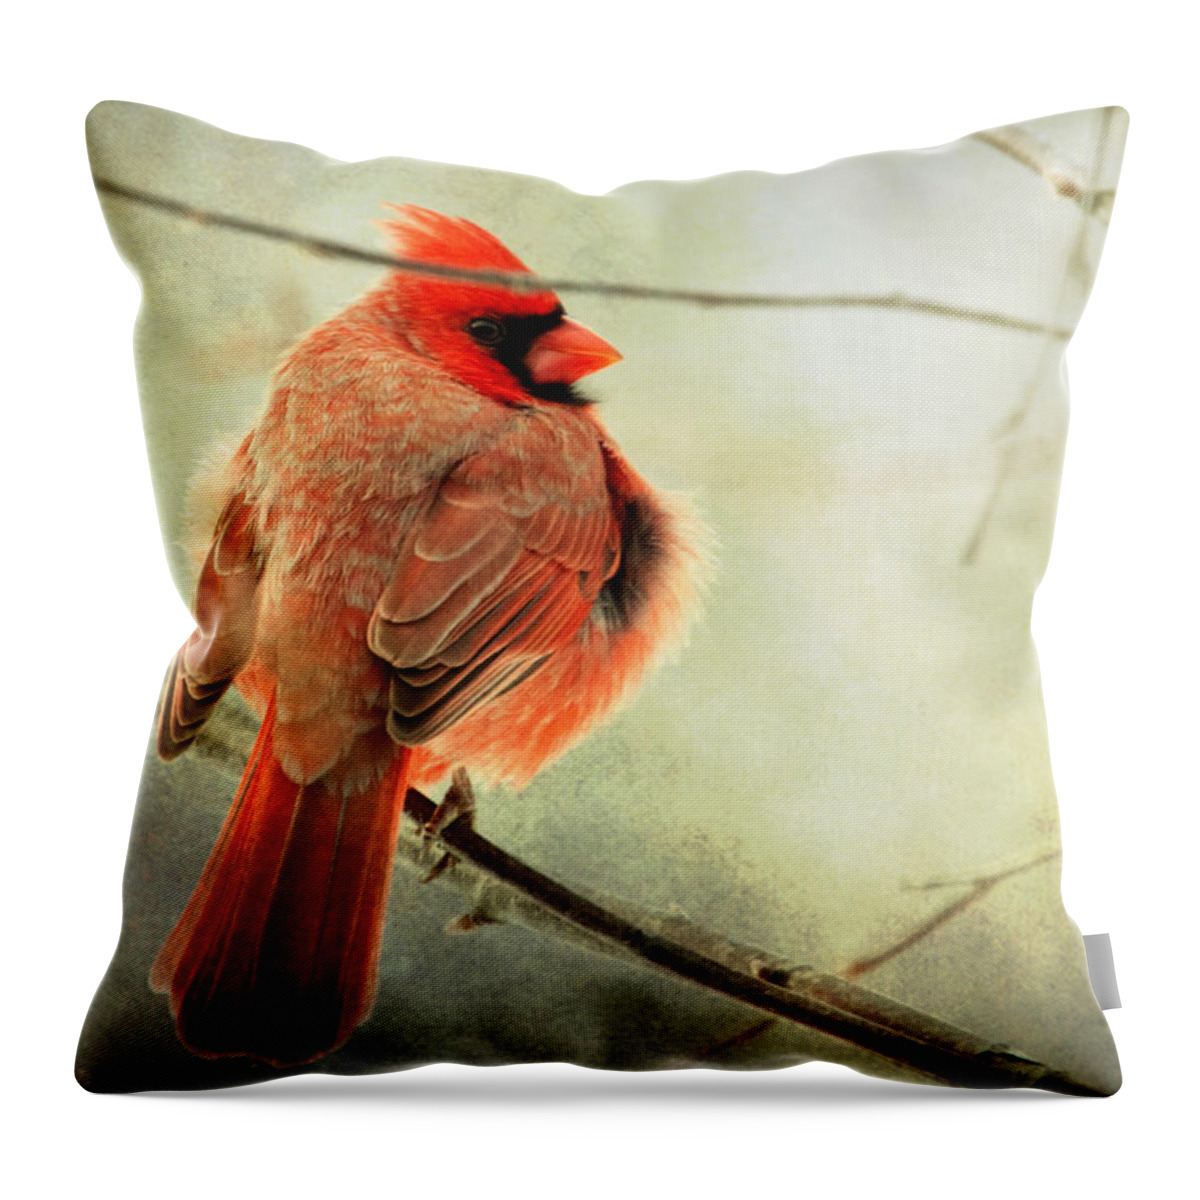 Cardinal Throw Pillow featuring the photograph Fluffy winter Cardinal by Al Mueller